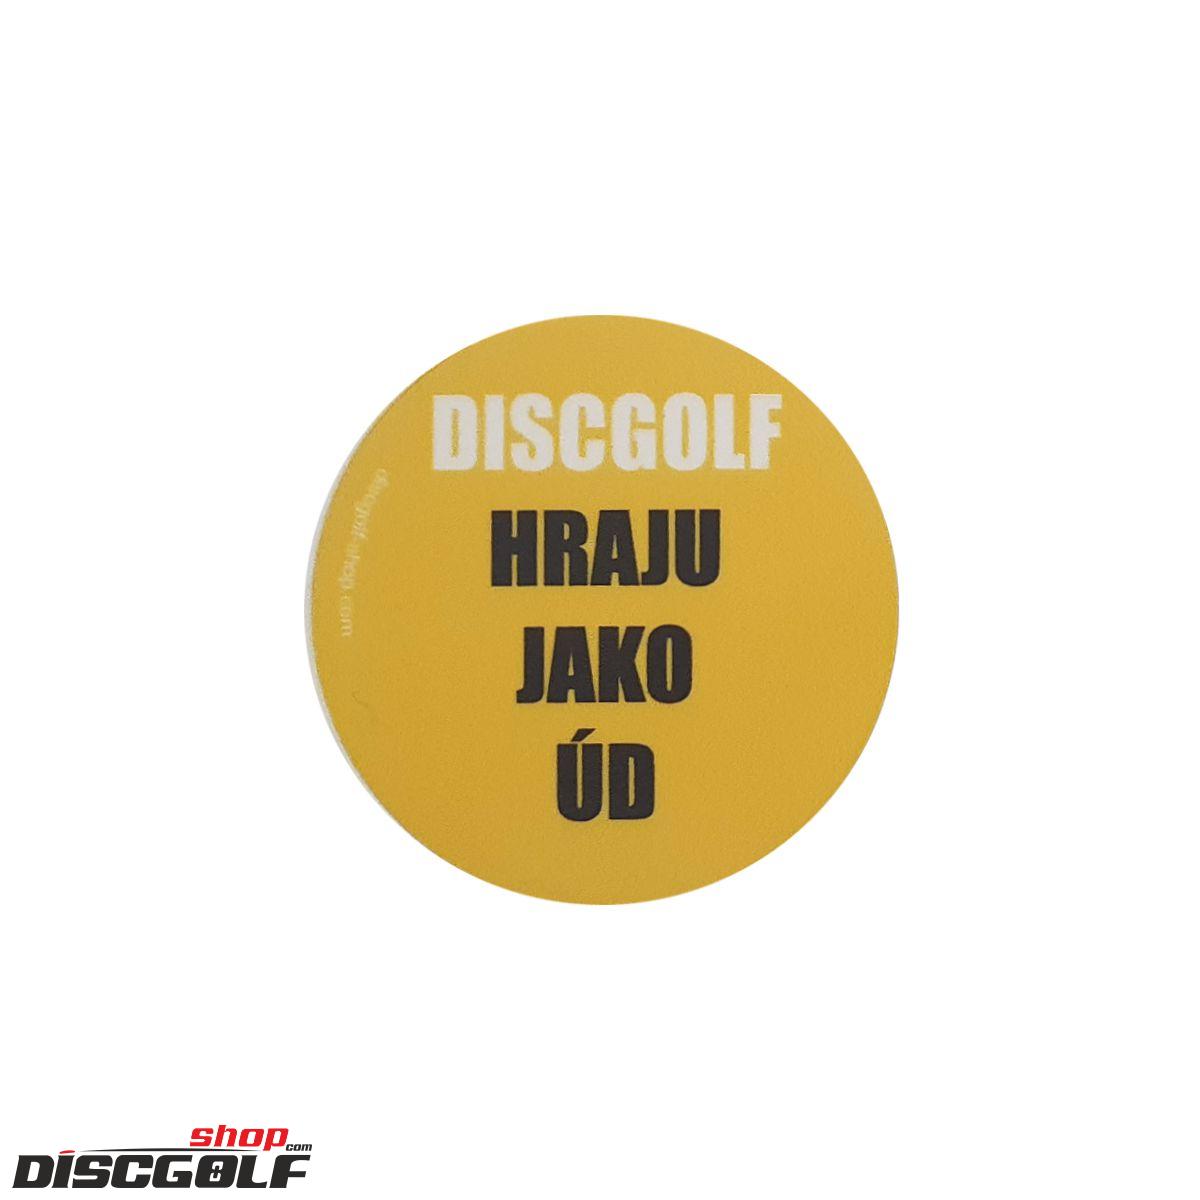 Samolepka "Discgolf hraju jako úd" (discgolf)